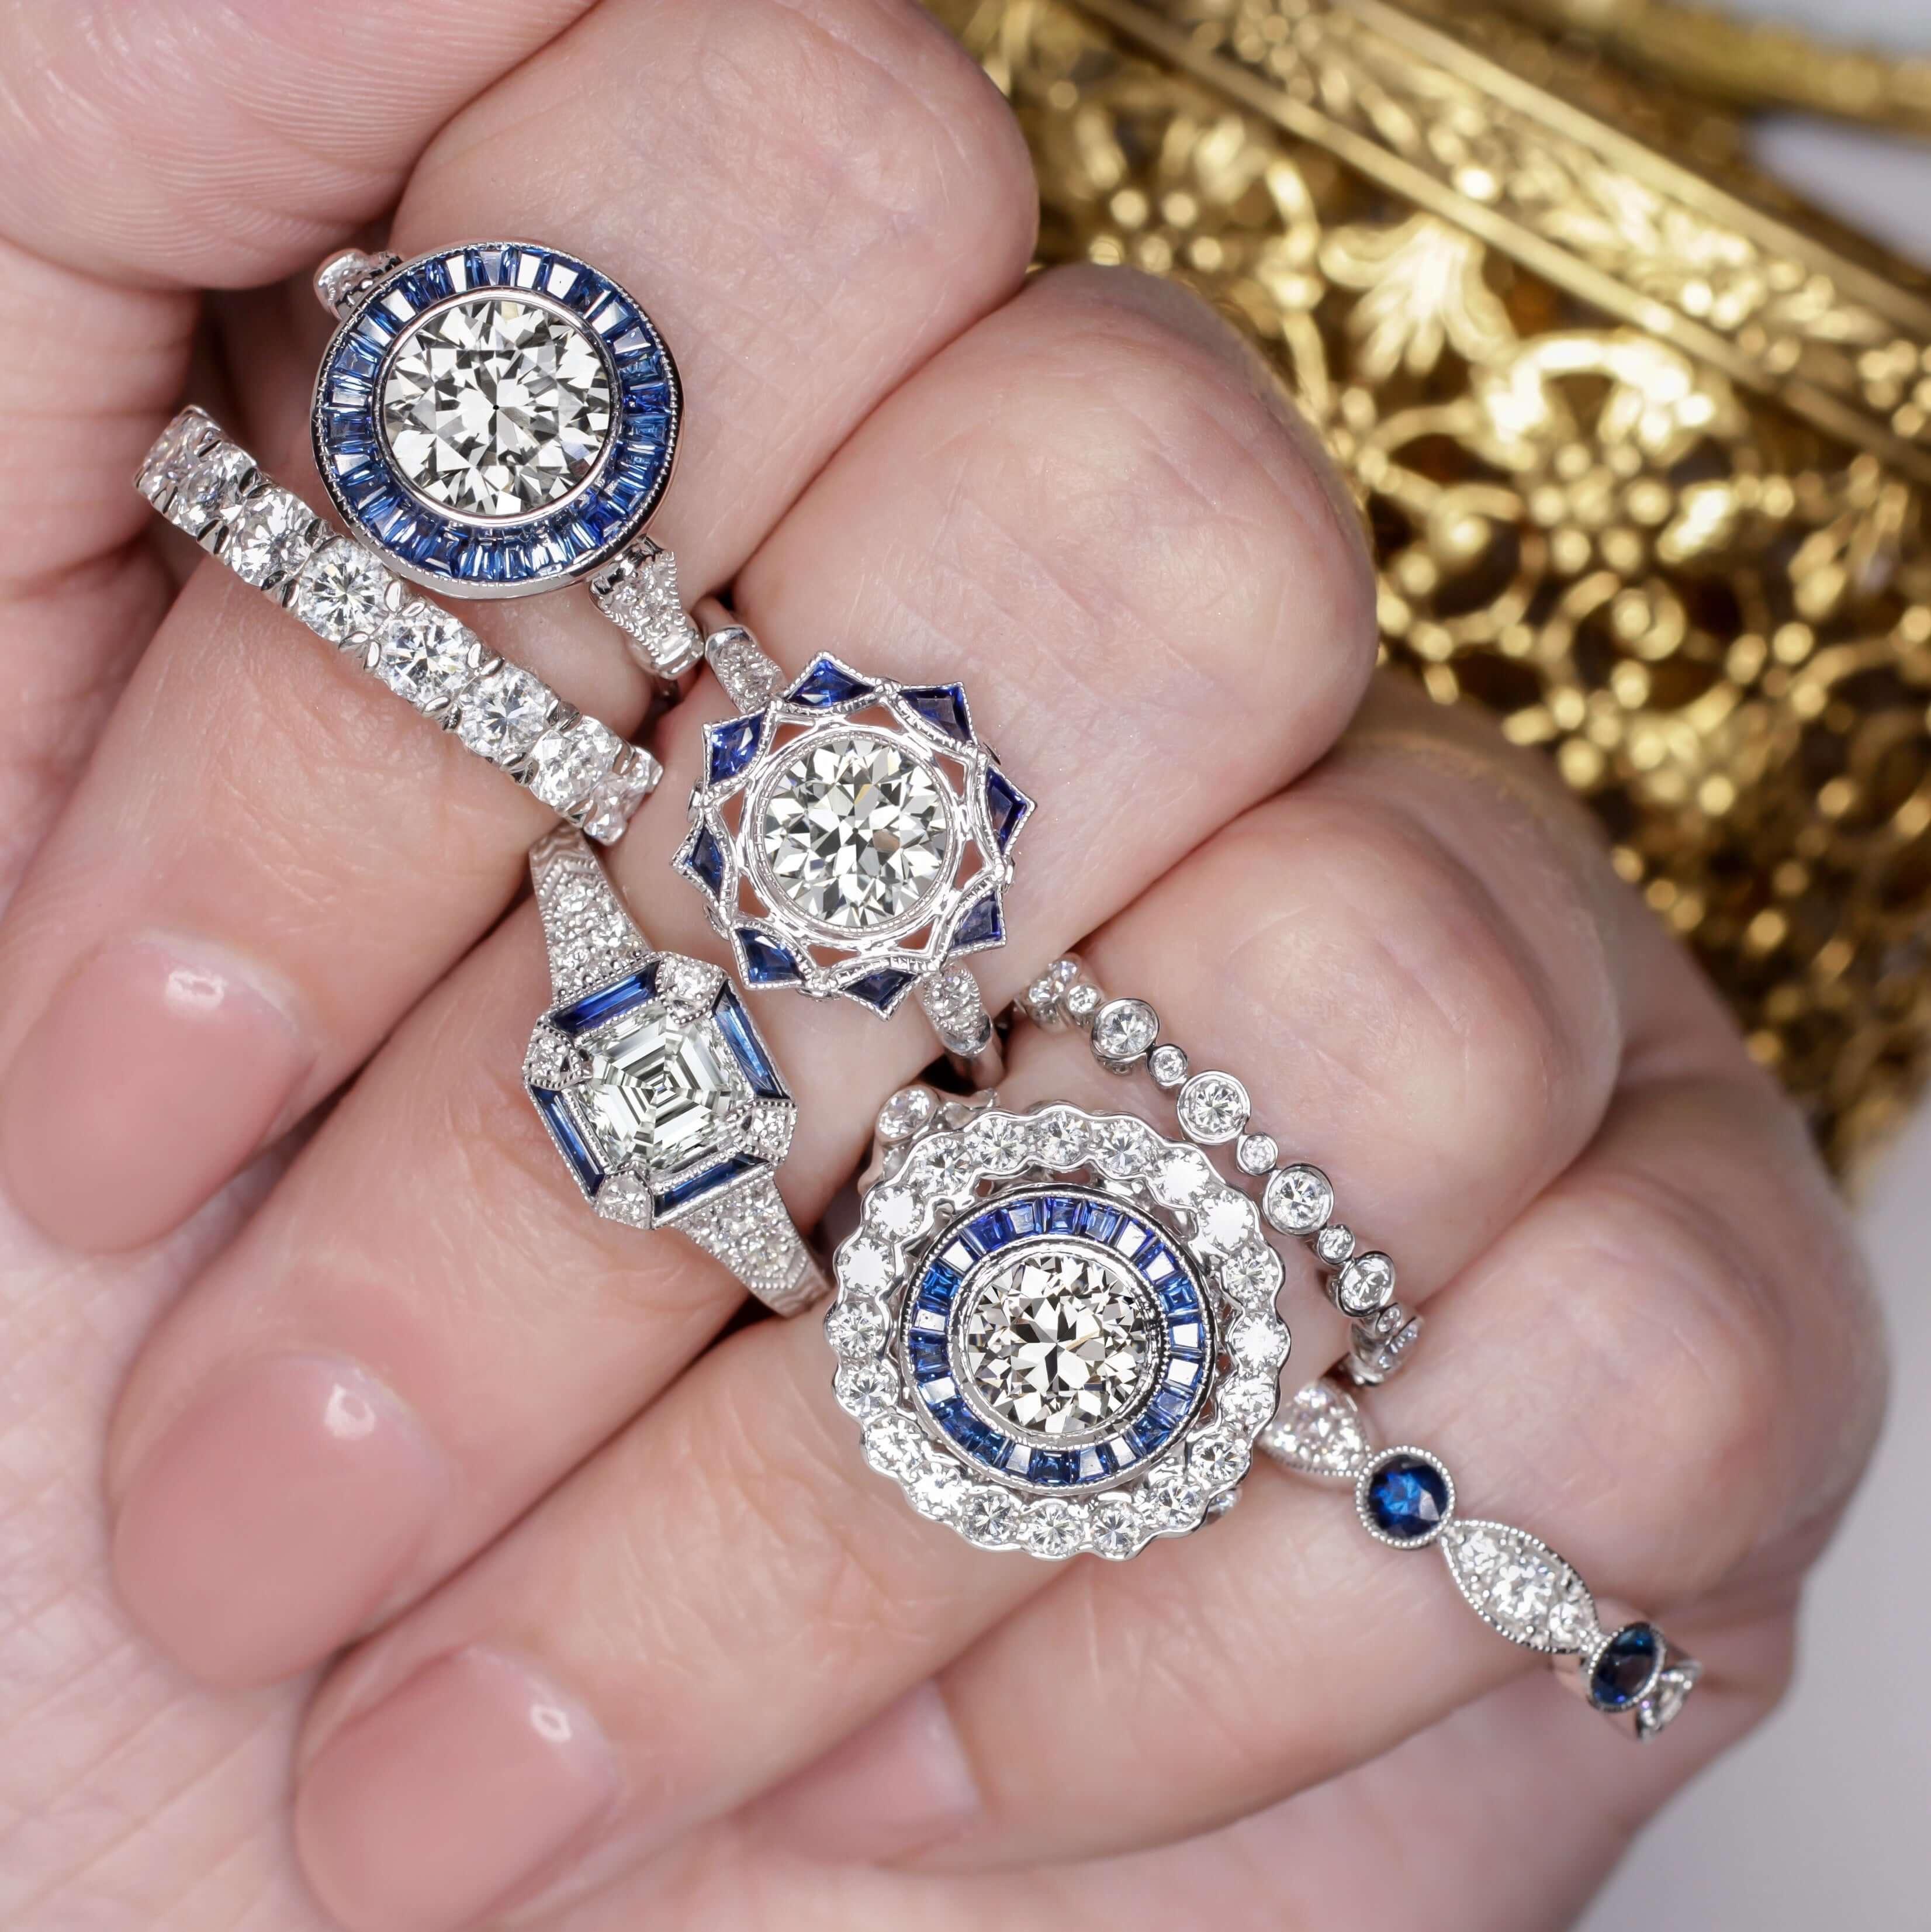 Buy 18Kt Heart Full Of Diamonds Love Ring 148VU6474 Online from Vaibhav  Jewellers